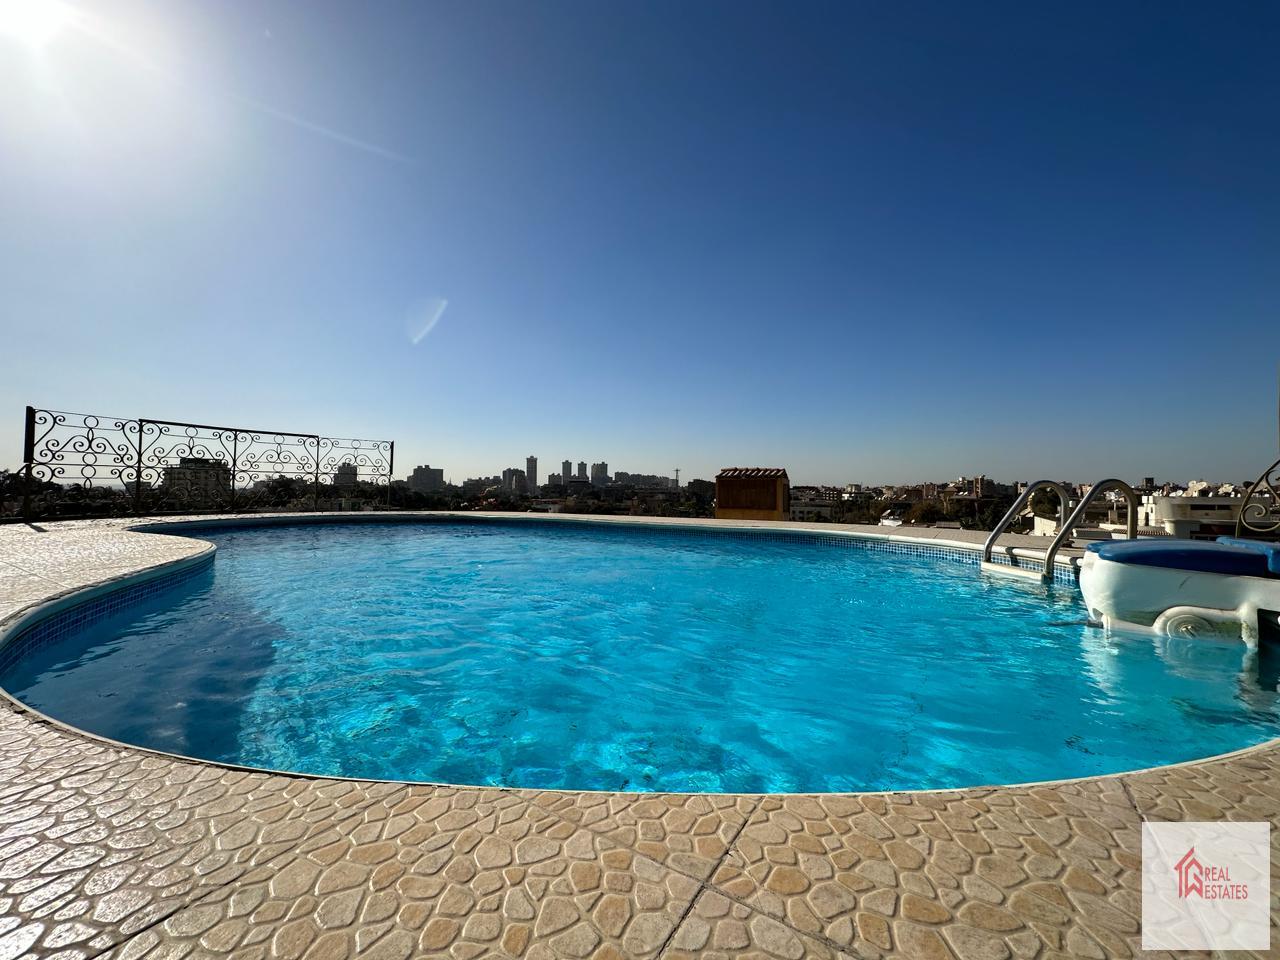 Maadi Sarayat 265米公寓出租出售共享游泳池